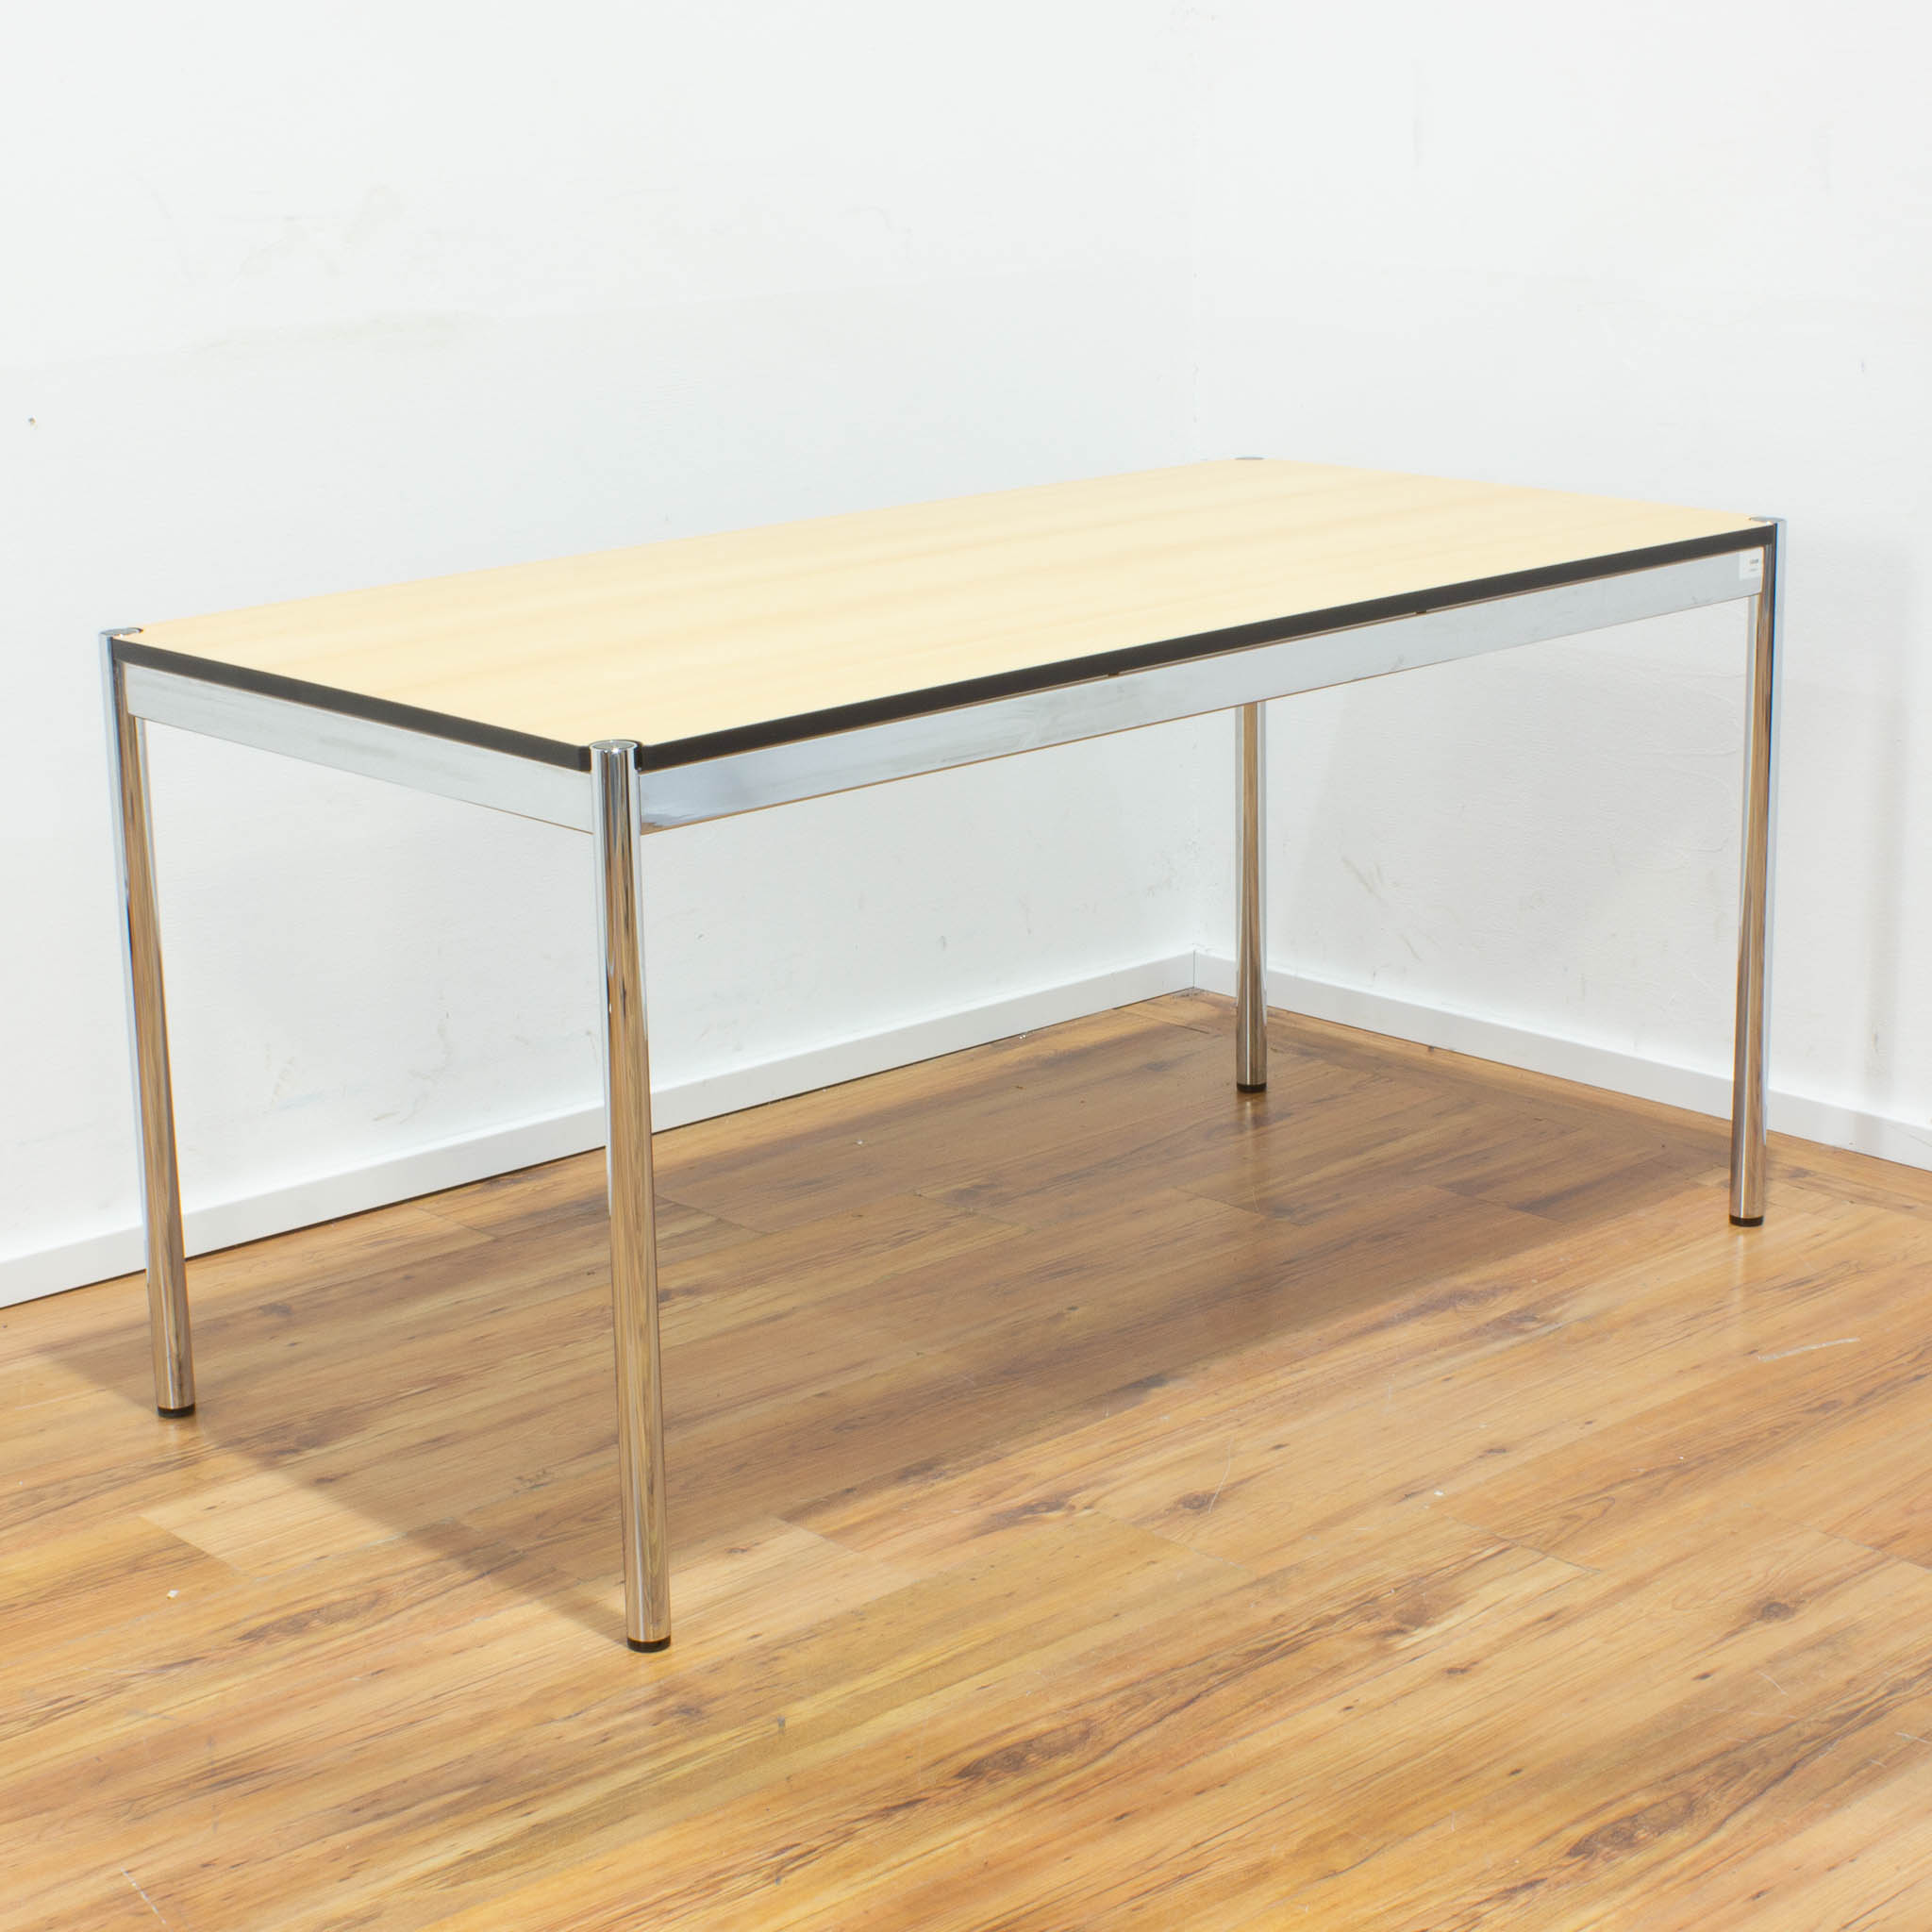 USM Haller Schreibtisch - Tischplatte buche - Umleimung schwarz gebraucht - 150 x 75 cm